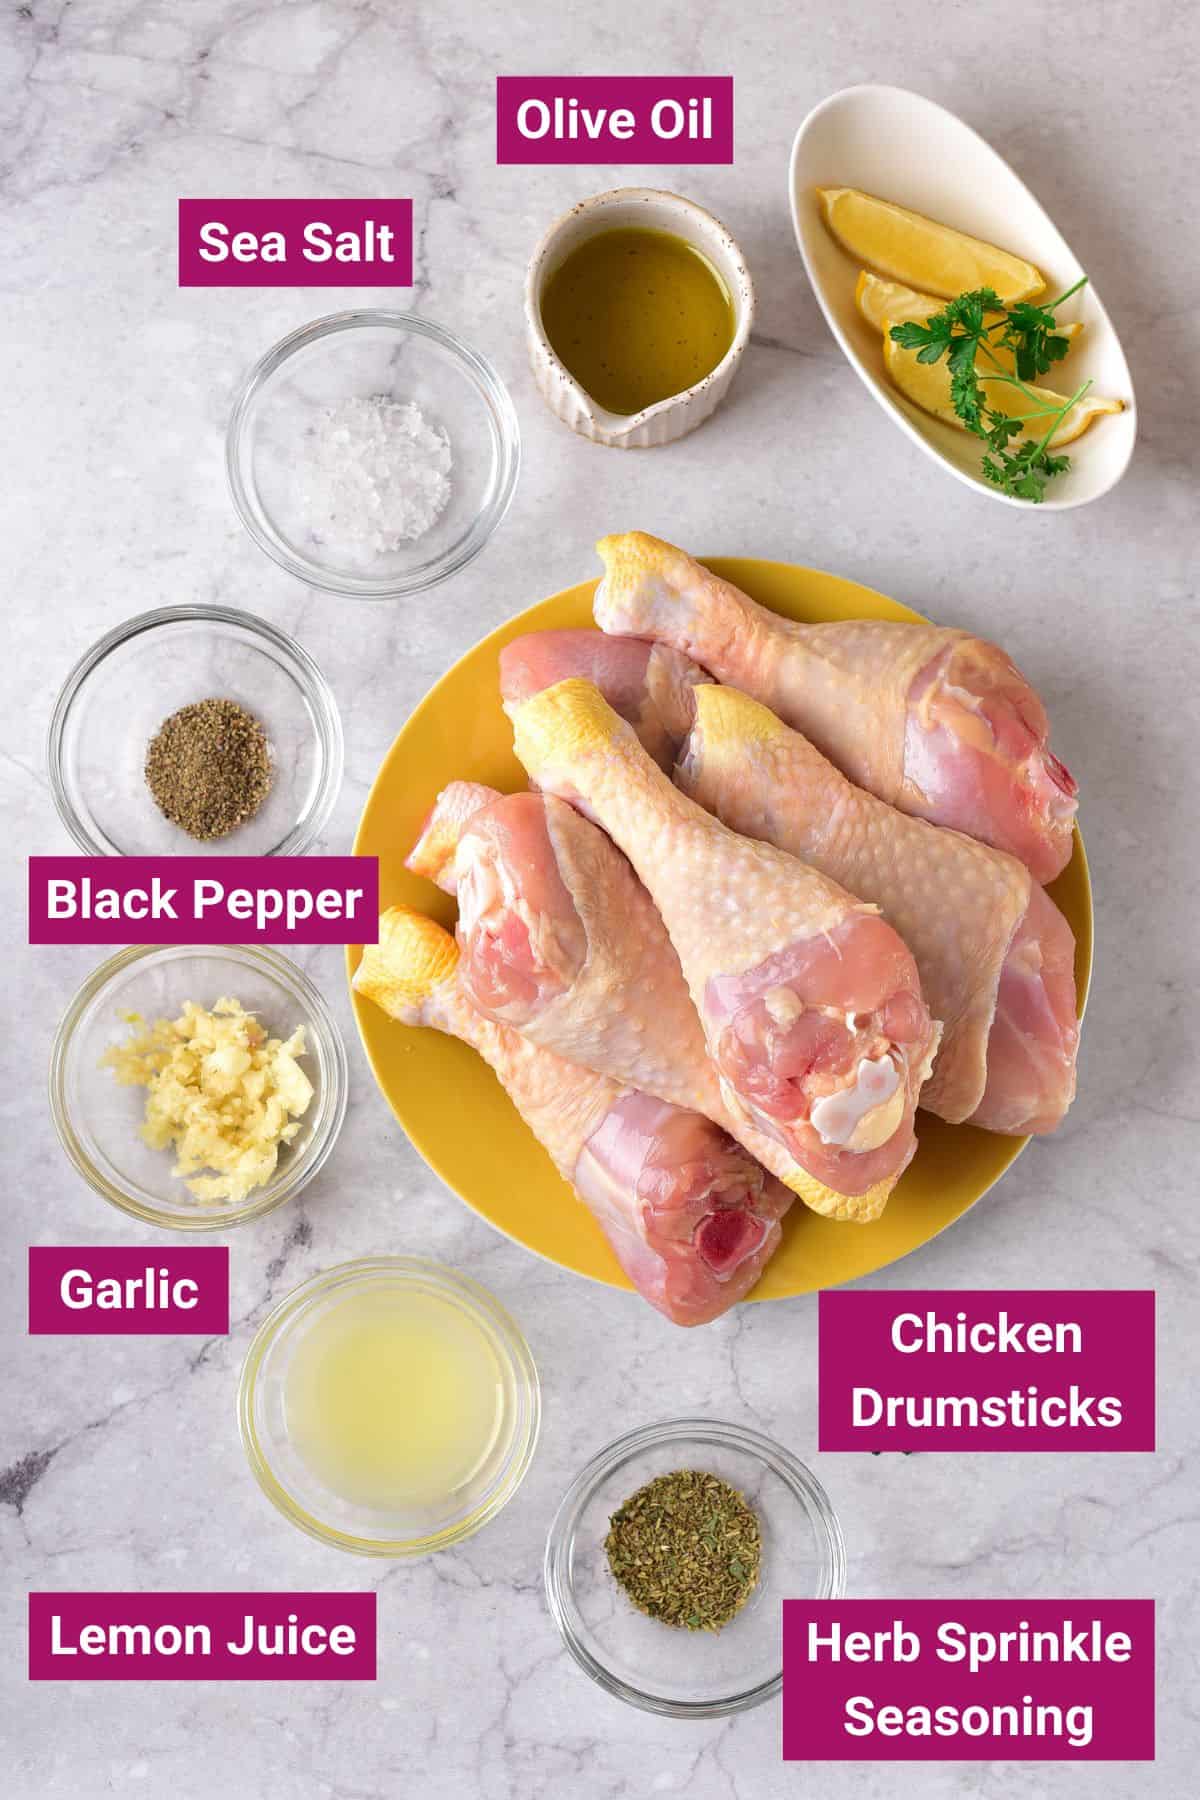 salt, black pepper, olive oil, garlic, lemon juice, chicken drumsticks and herb seasoning in separate bowls